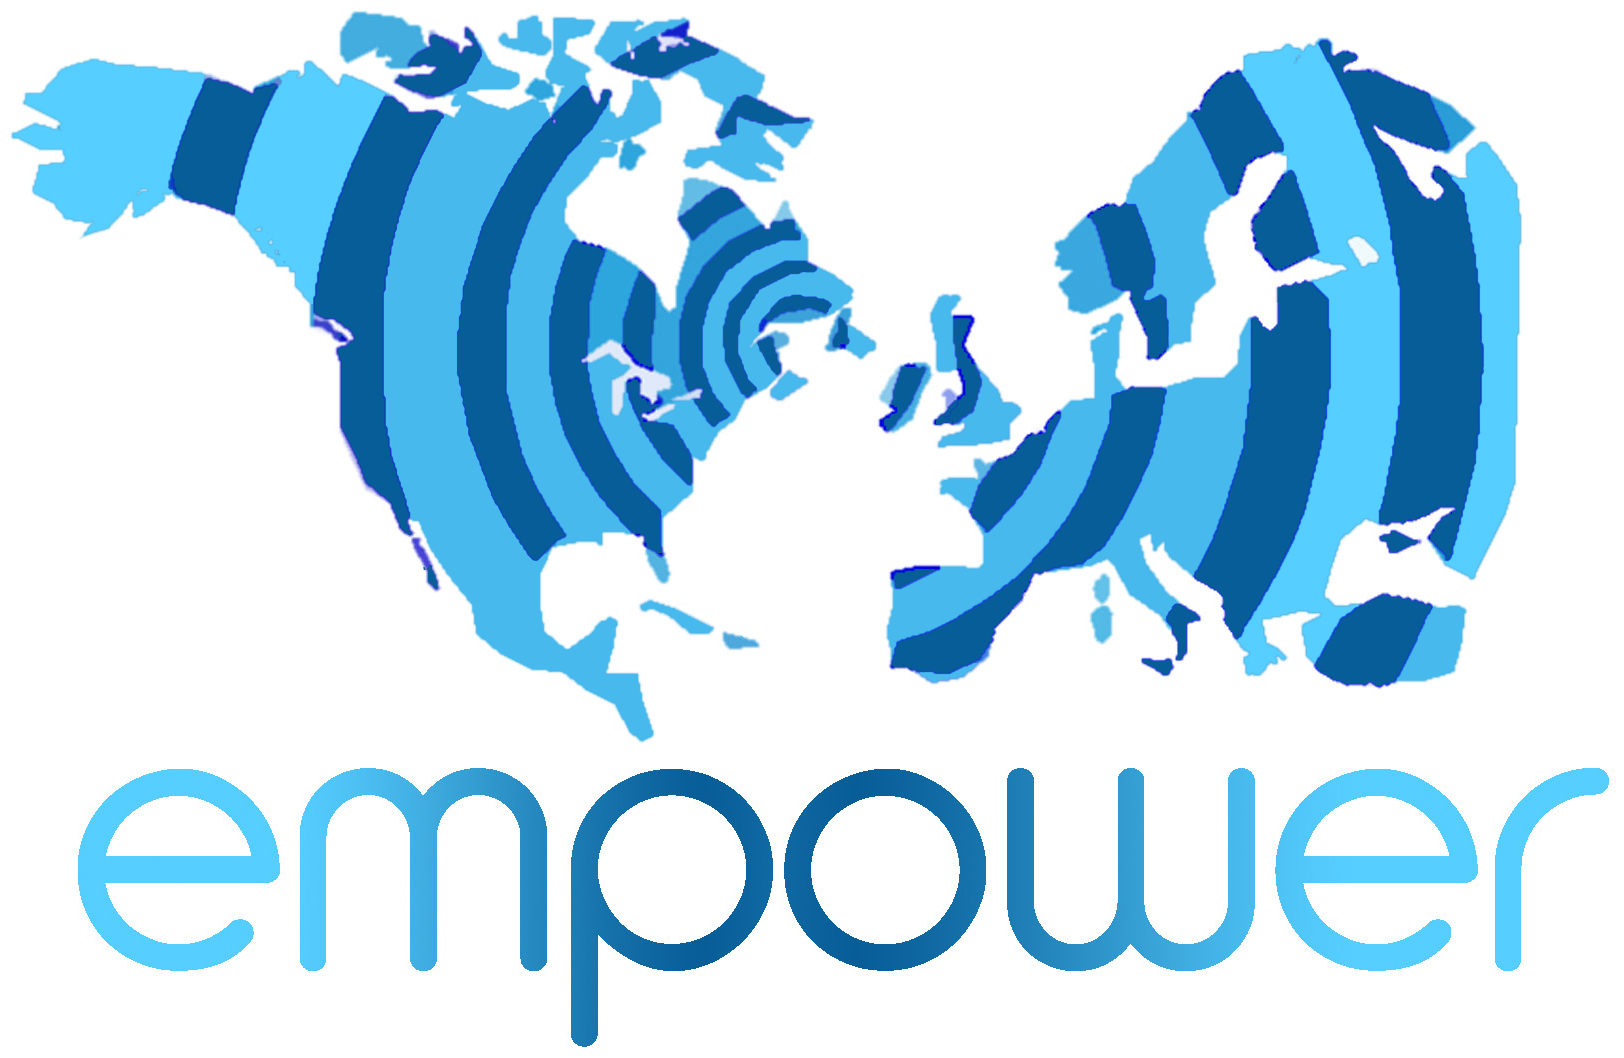 EMPOWER logo